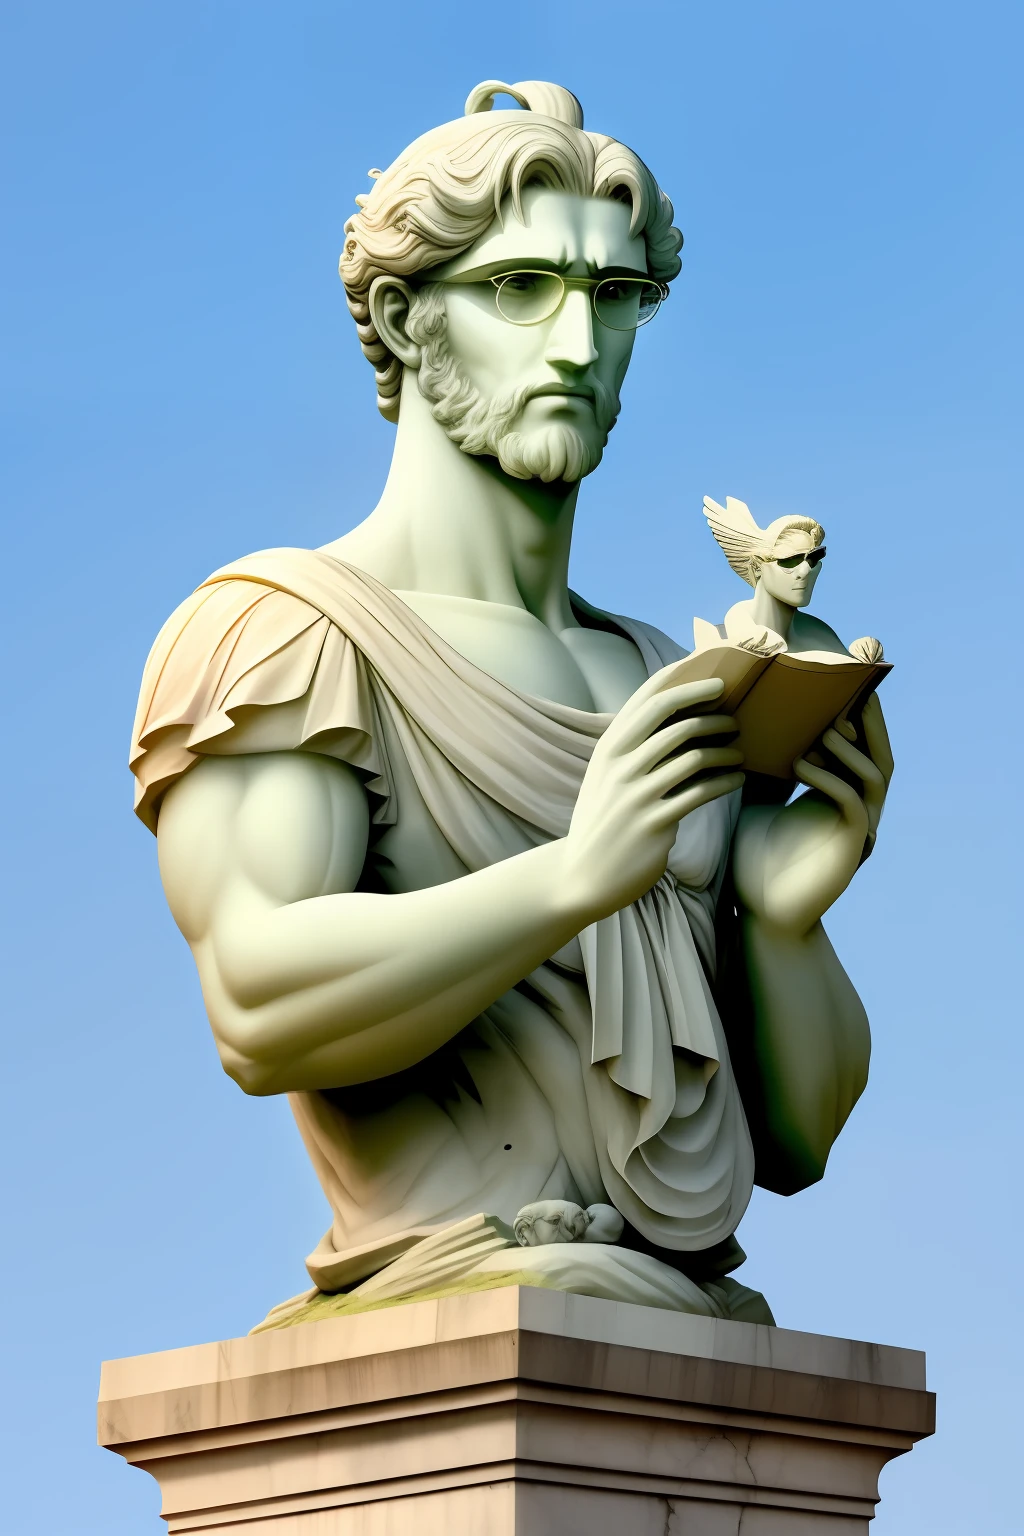 希臘大理石雕像風格, 沒有衣服,灰戶黑, 灰色的頭髮和眼鏡